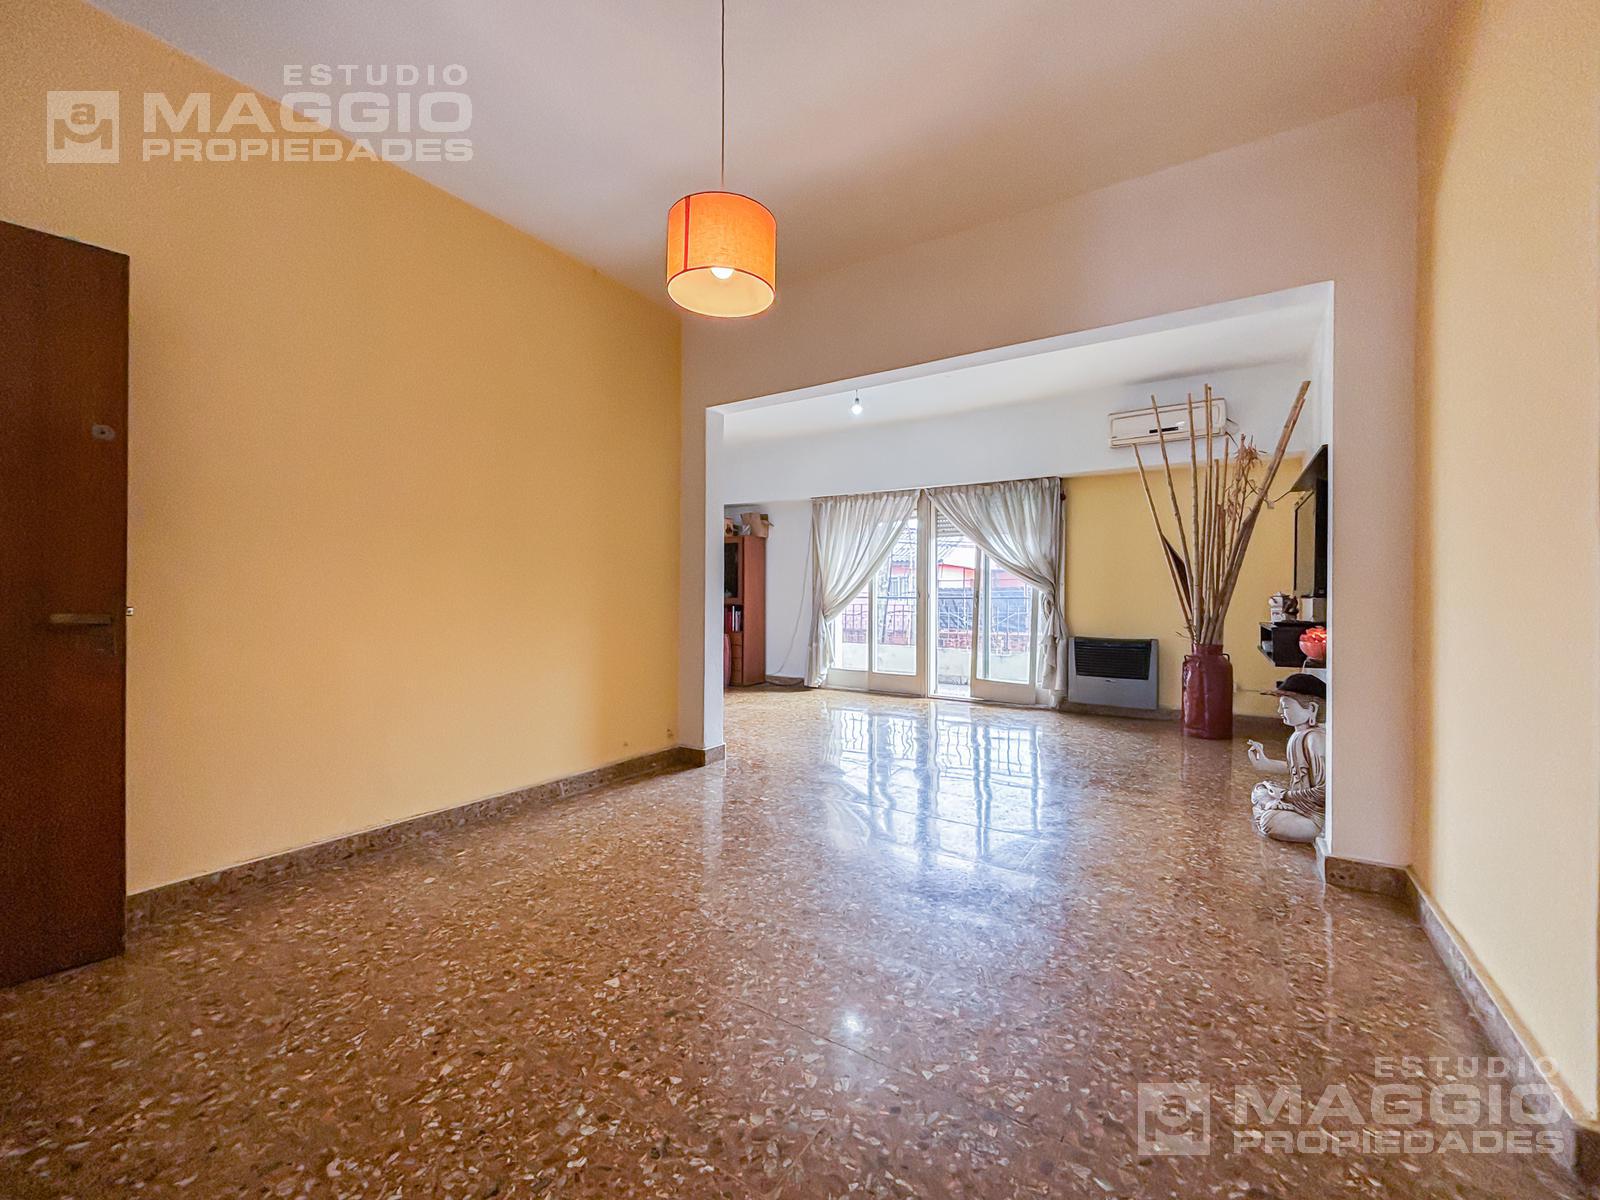 #5229387 | Sale | Apartment | Ramos Mejia (Estudio A. Maggio Propiedades)